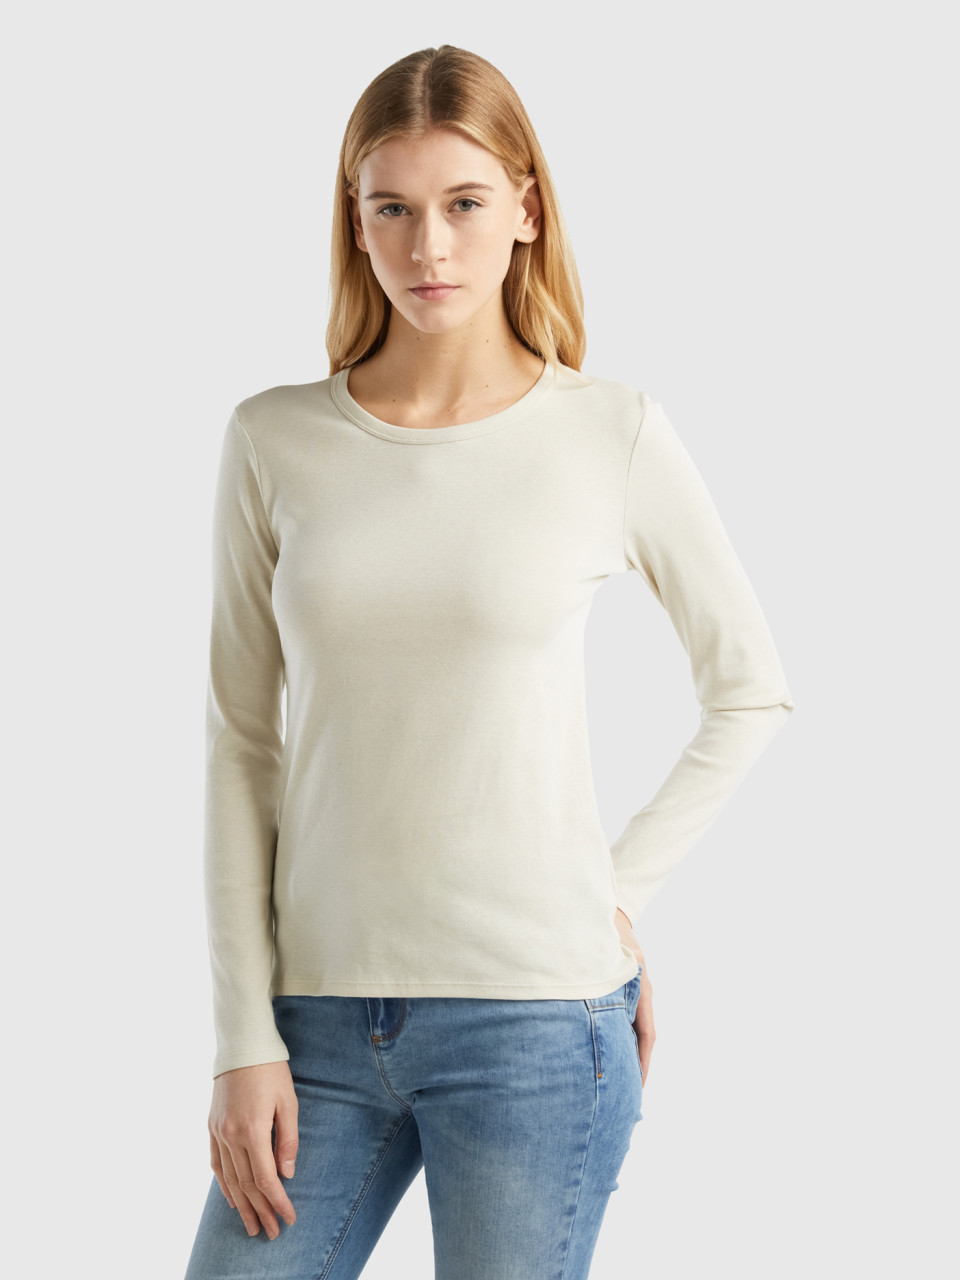 Benetton, Long Sleeve Pure Cotton T-shirt, Beige, Women